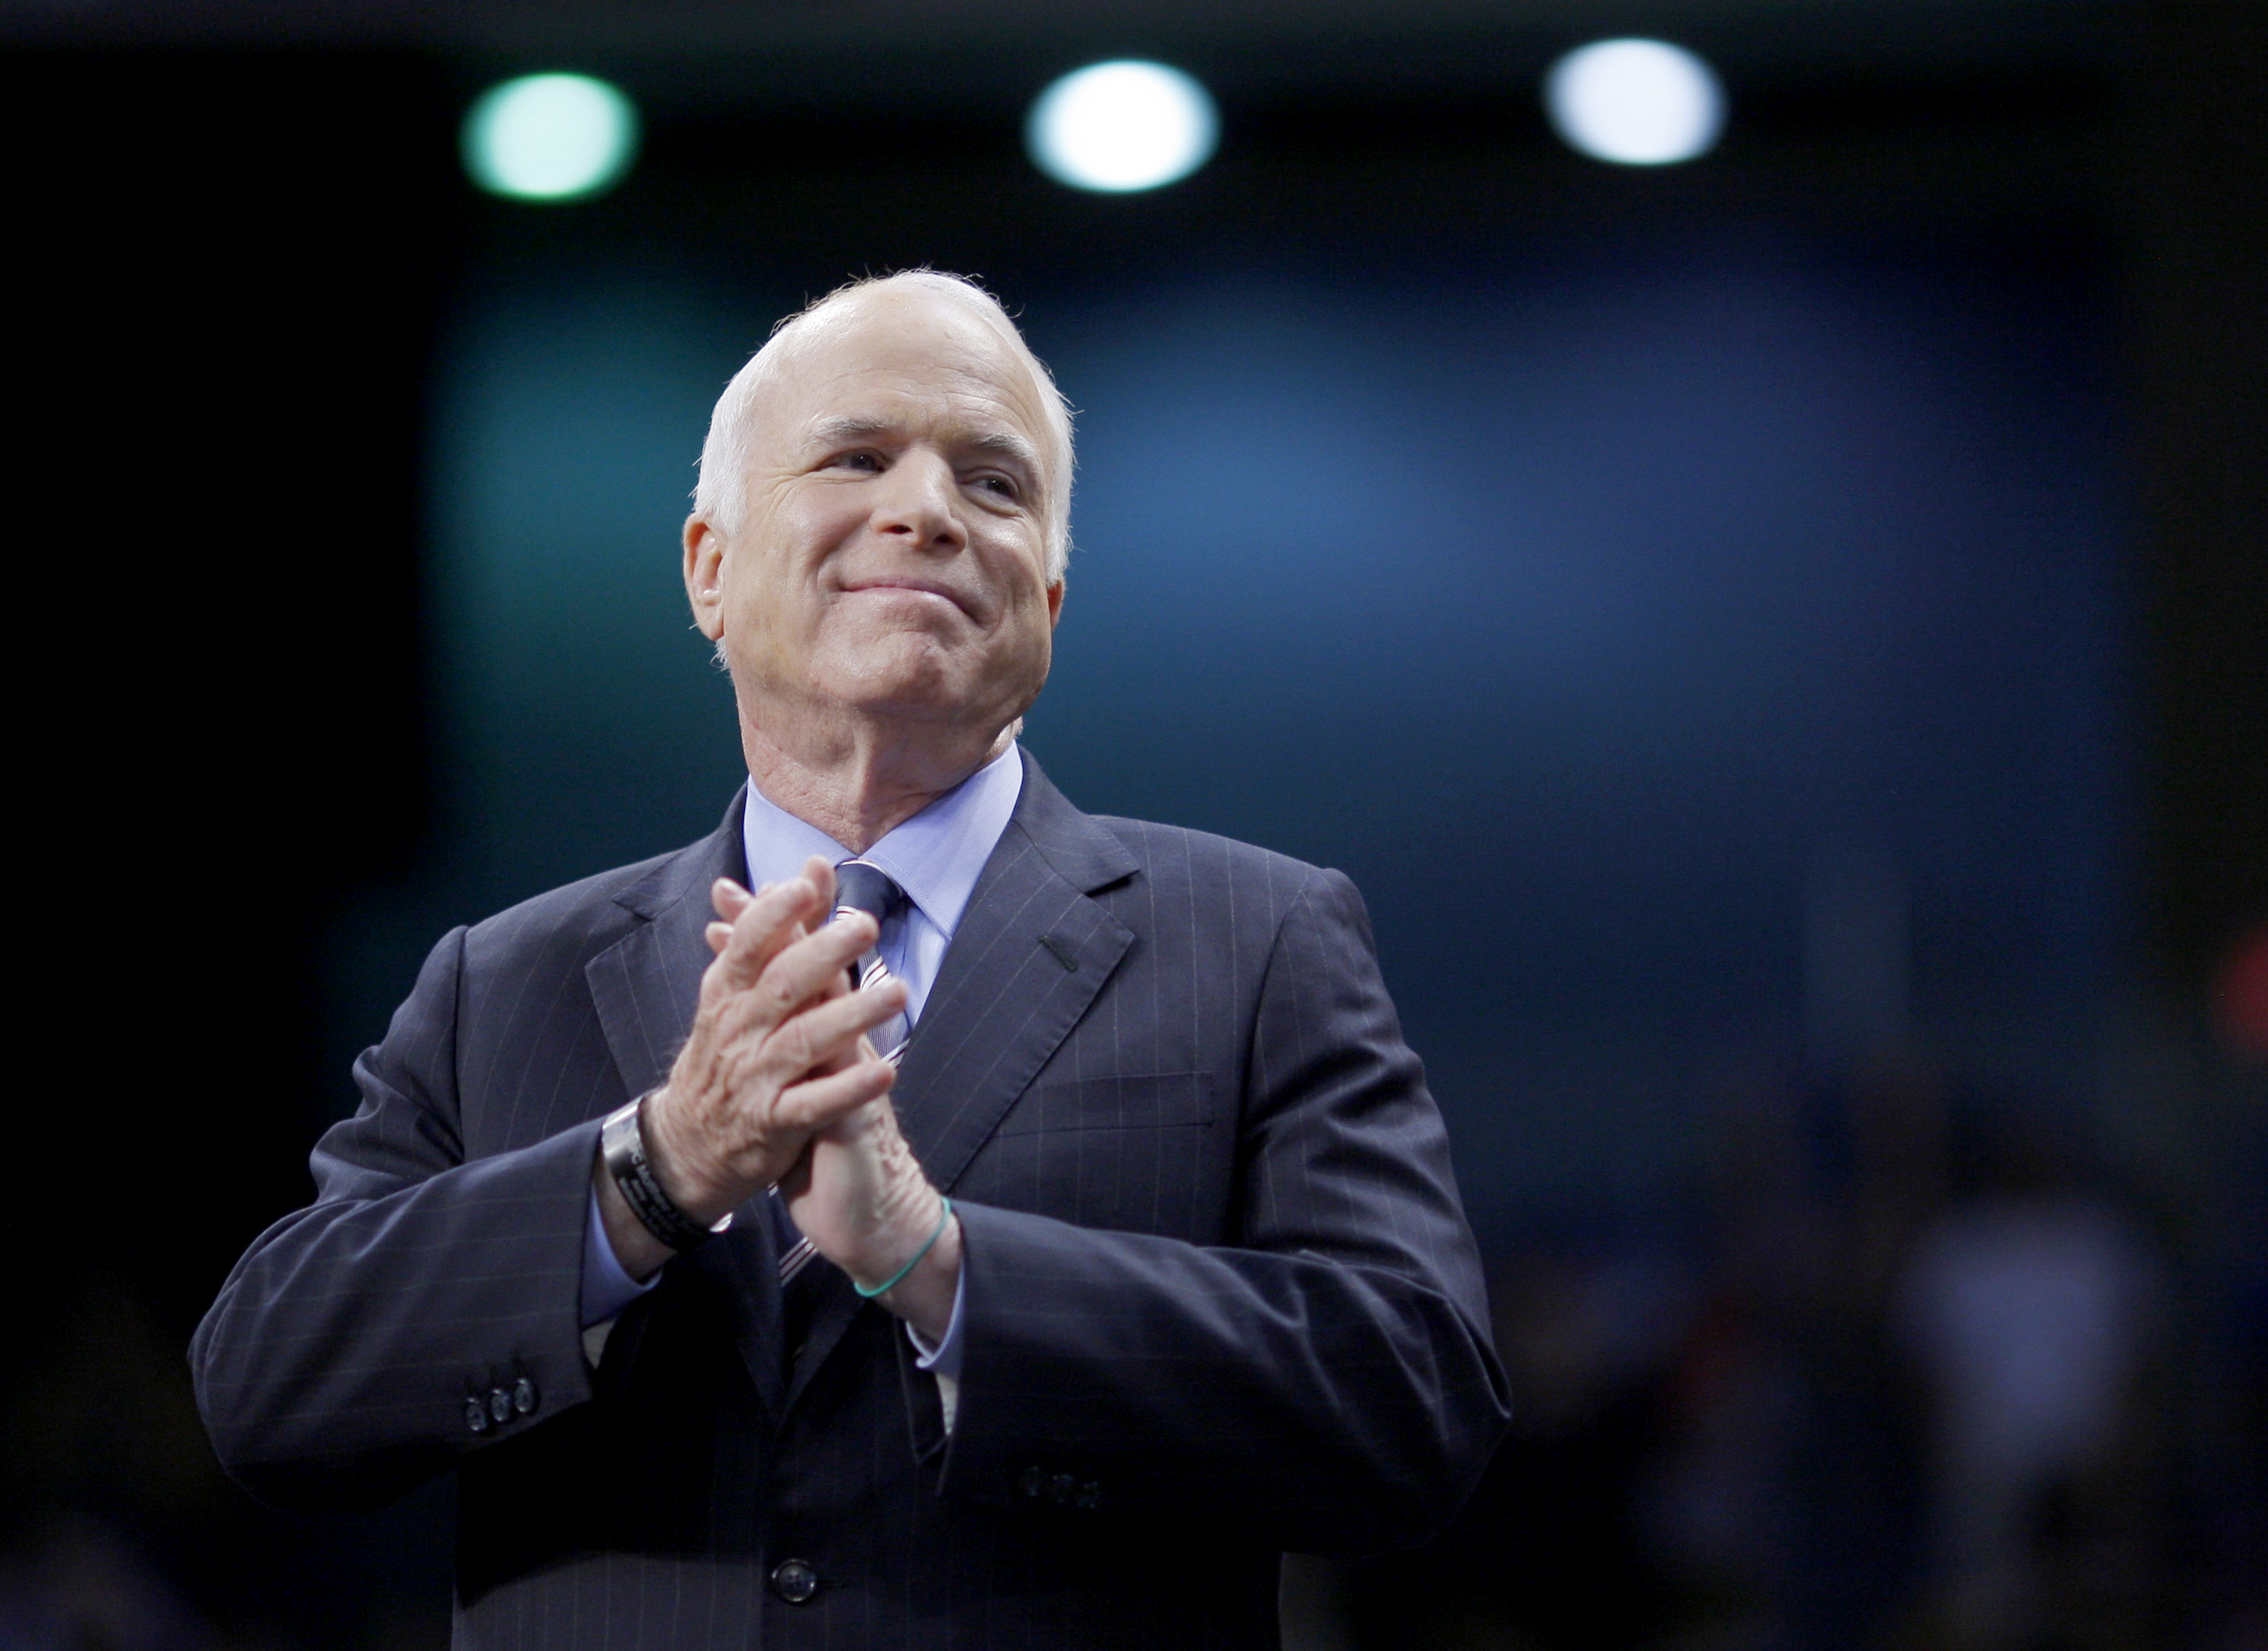 John McCain has died, dead at 81